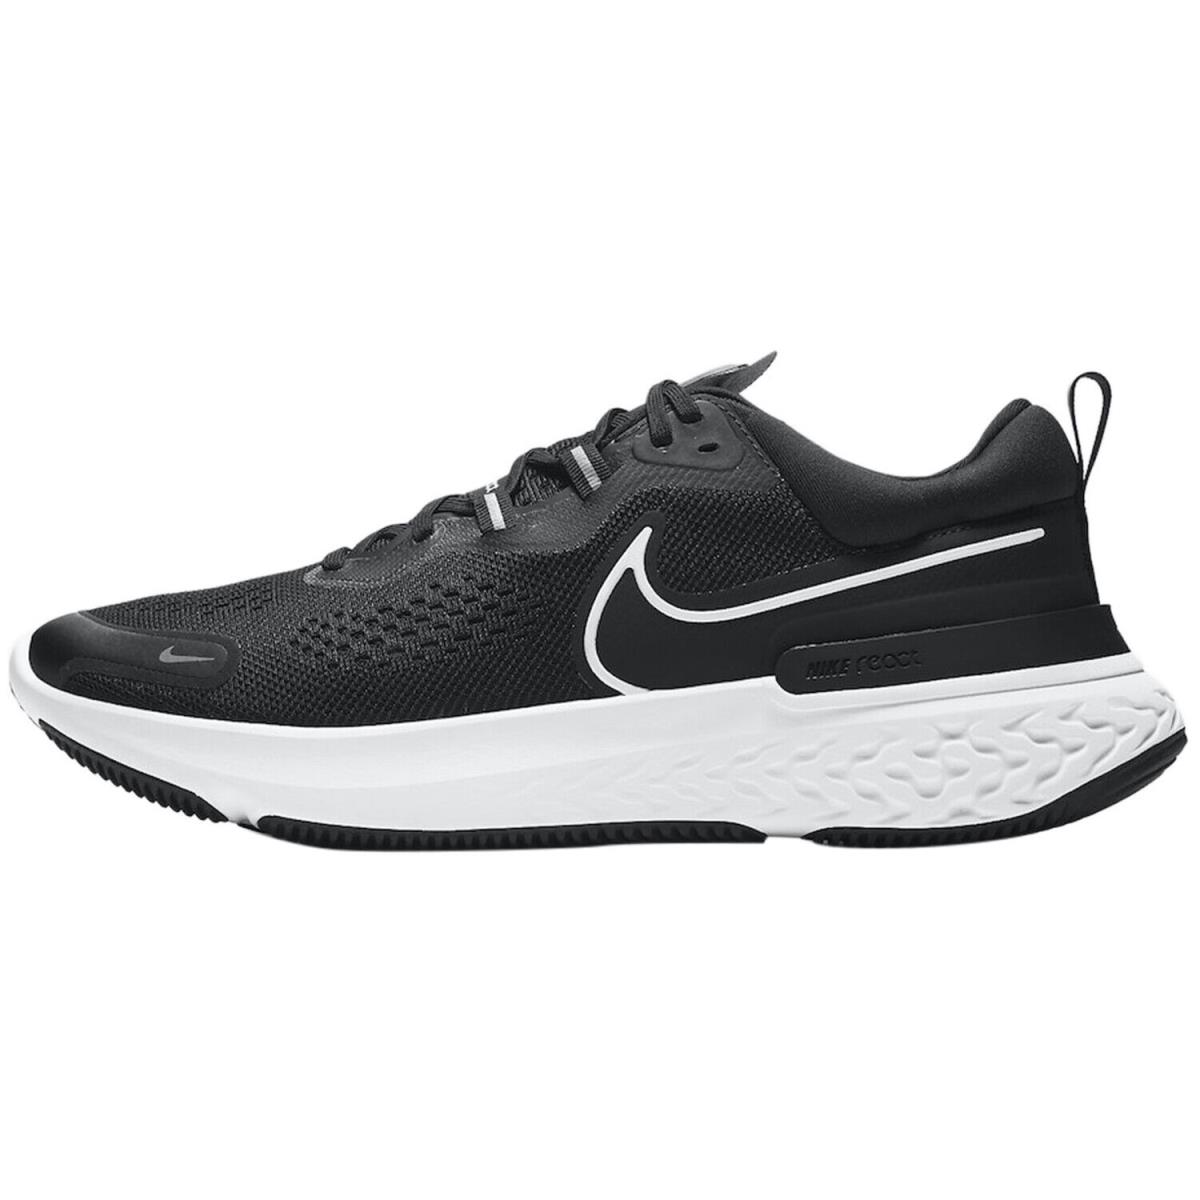 Nike React Miler 2 Mens CW7121-001 Black White Grey Running Shoes Size 10.5